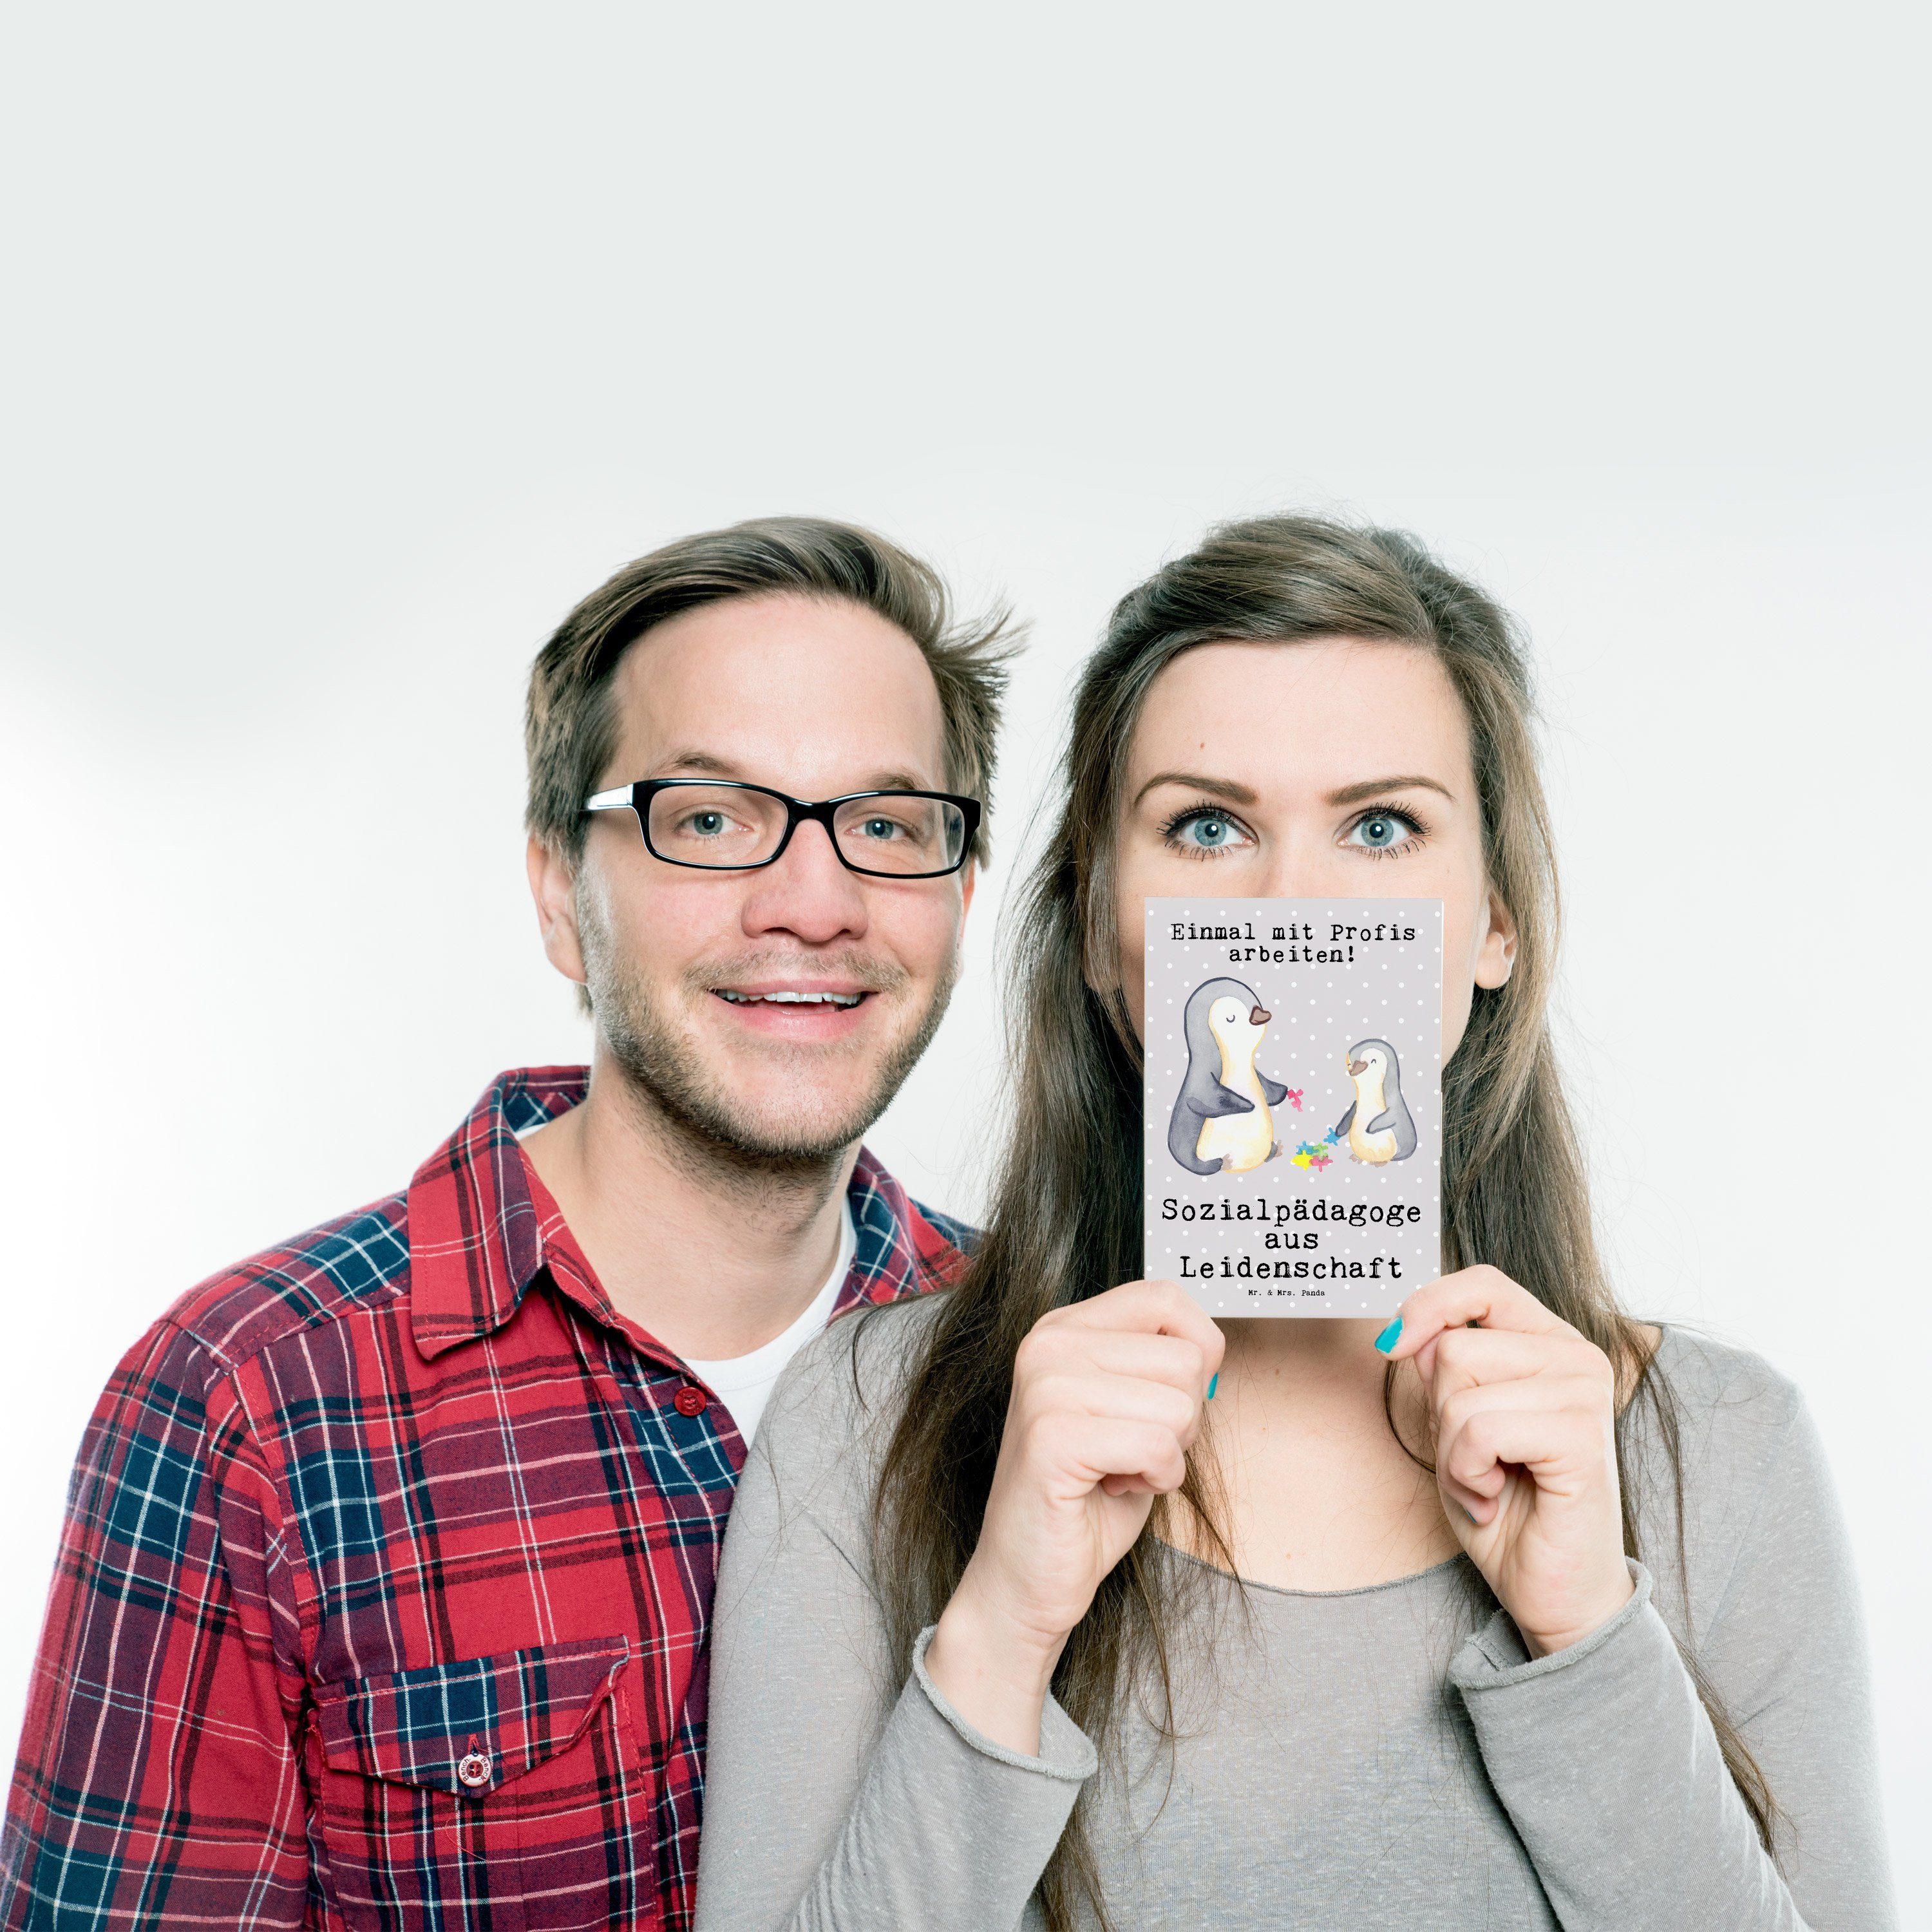 Mr. & Mrs. Grußkarte Geschenk, Panda Pastell Sozialpädagoge - Postkarte - Grau aus Leidenschaft